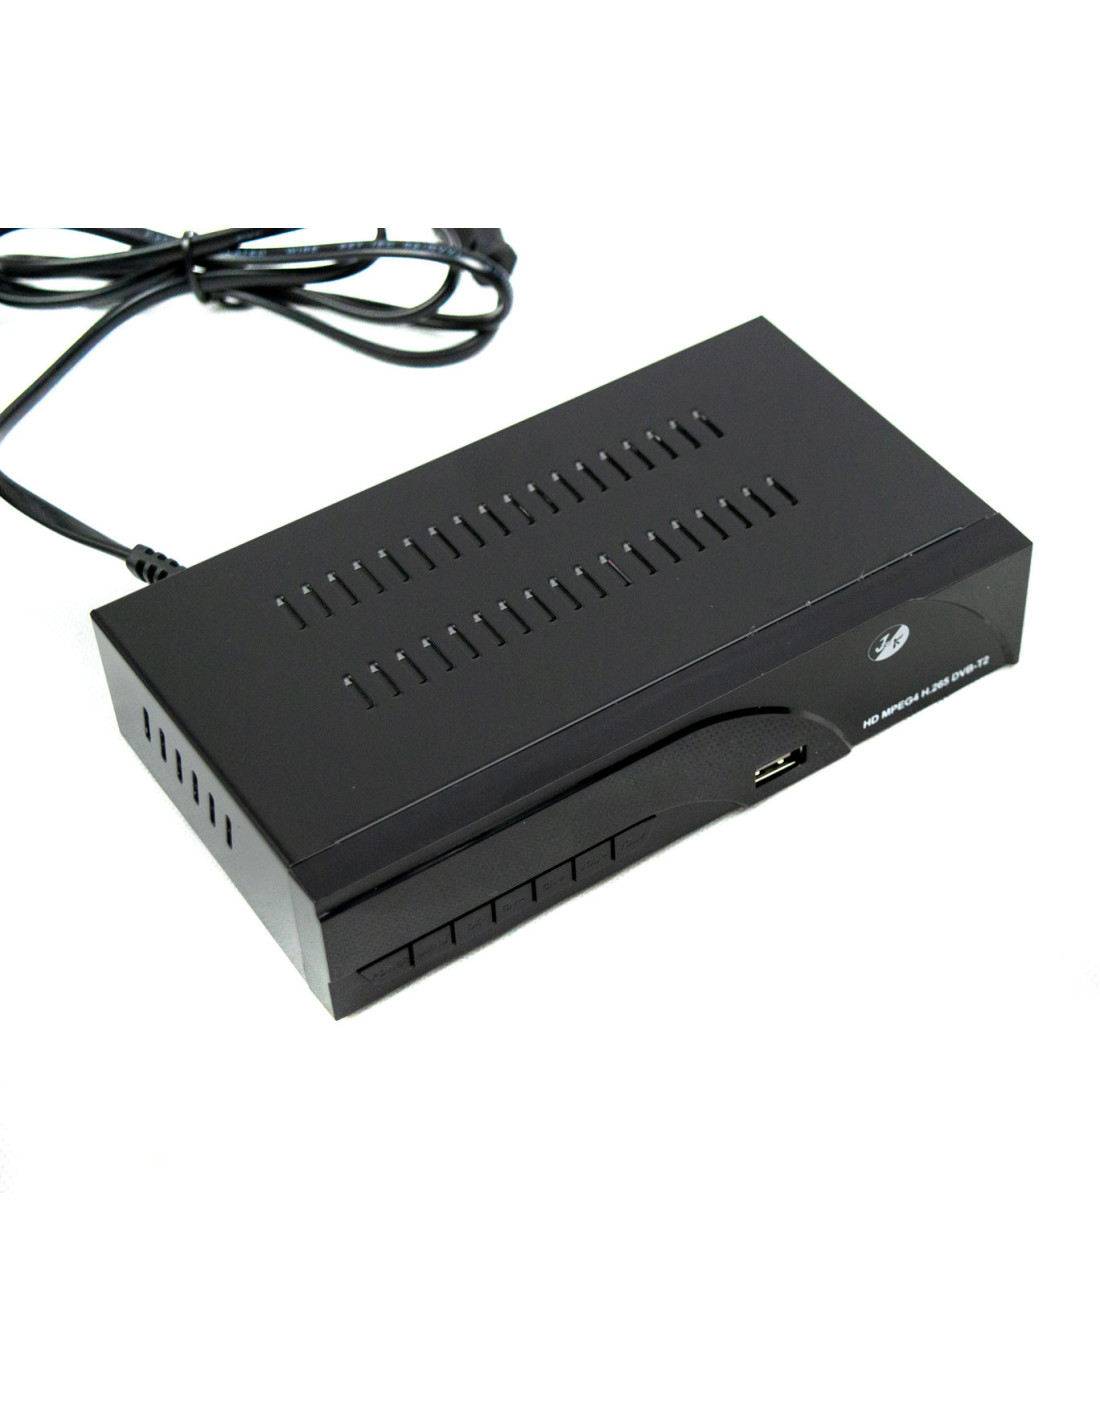 DECODIFICADOR DVB T2 FULL HD HD8943 SISTEMA PVR SCART Y HDMI SALIDA MPEG-4  USB